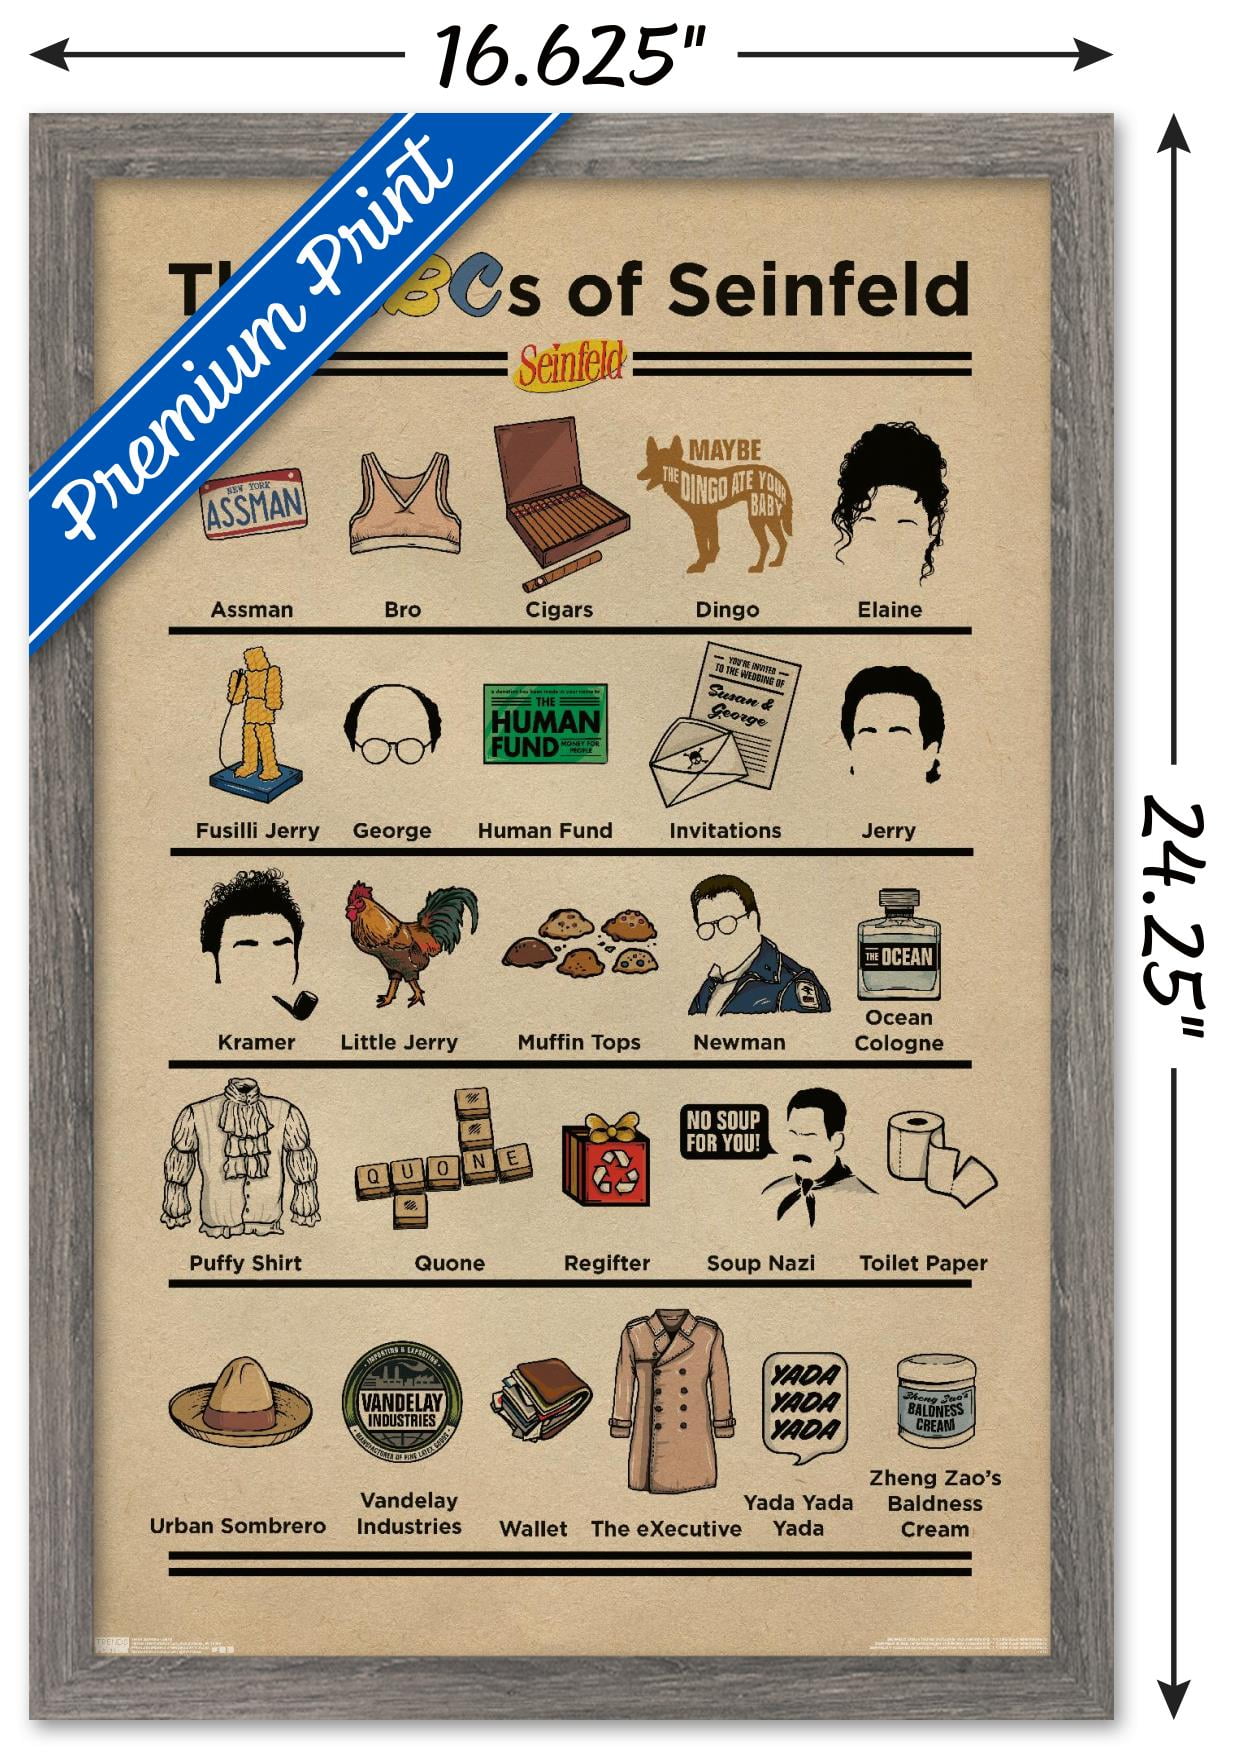 14.725 x 22.375 ABCs Wall Poster Trends International Seinfeld Premium Unframed Version 